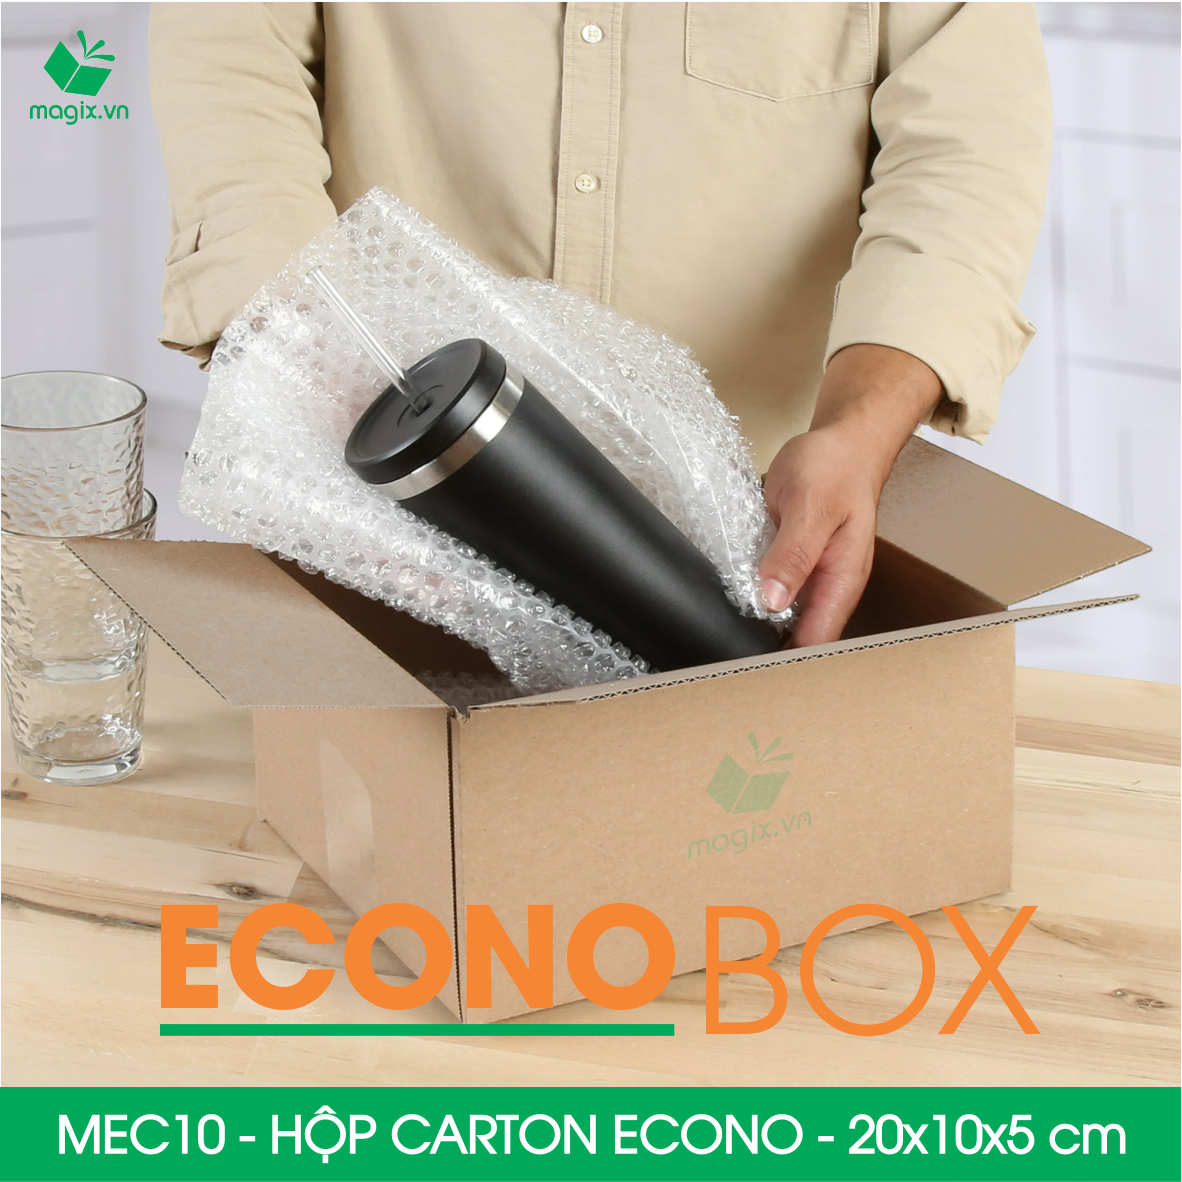 MEC10 - 20x10x5 cm - Combo 100 thùng hộp carton trơn siêu tiết kiệm ECONO